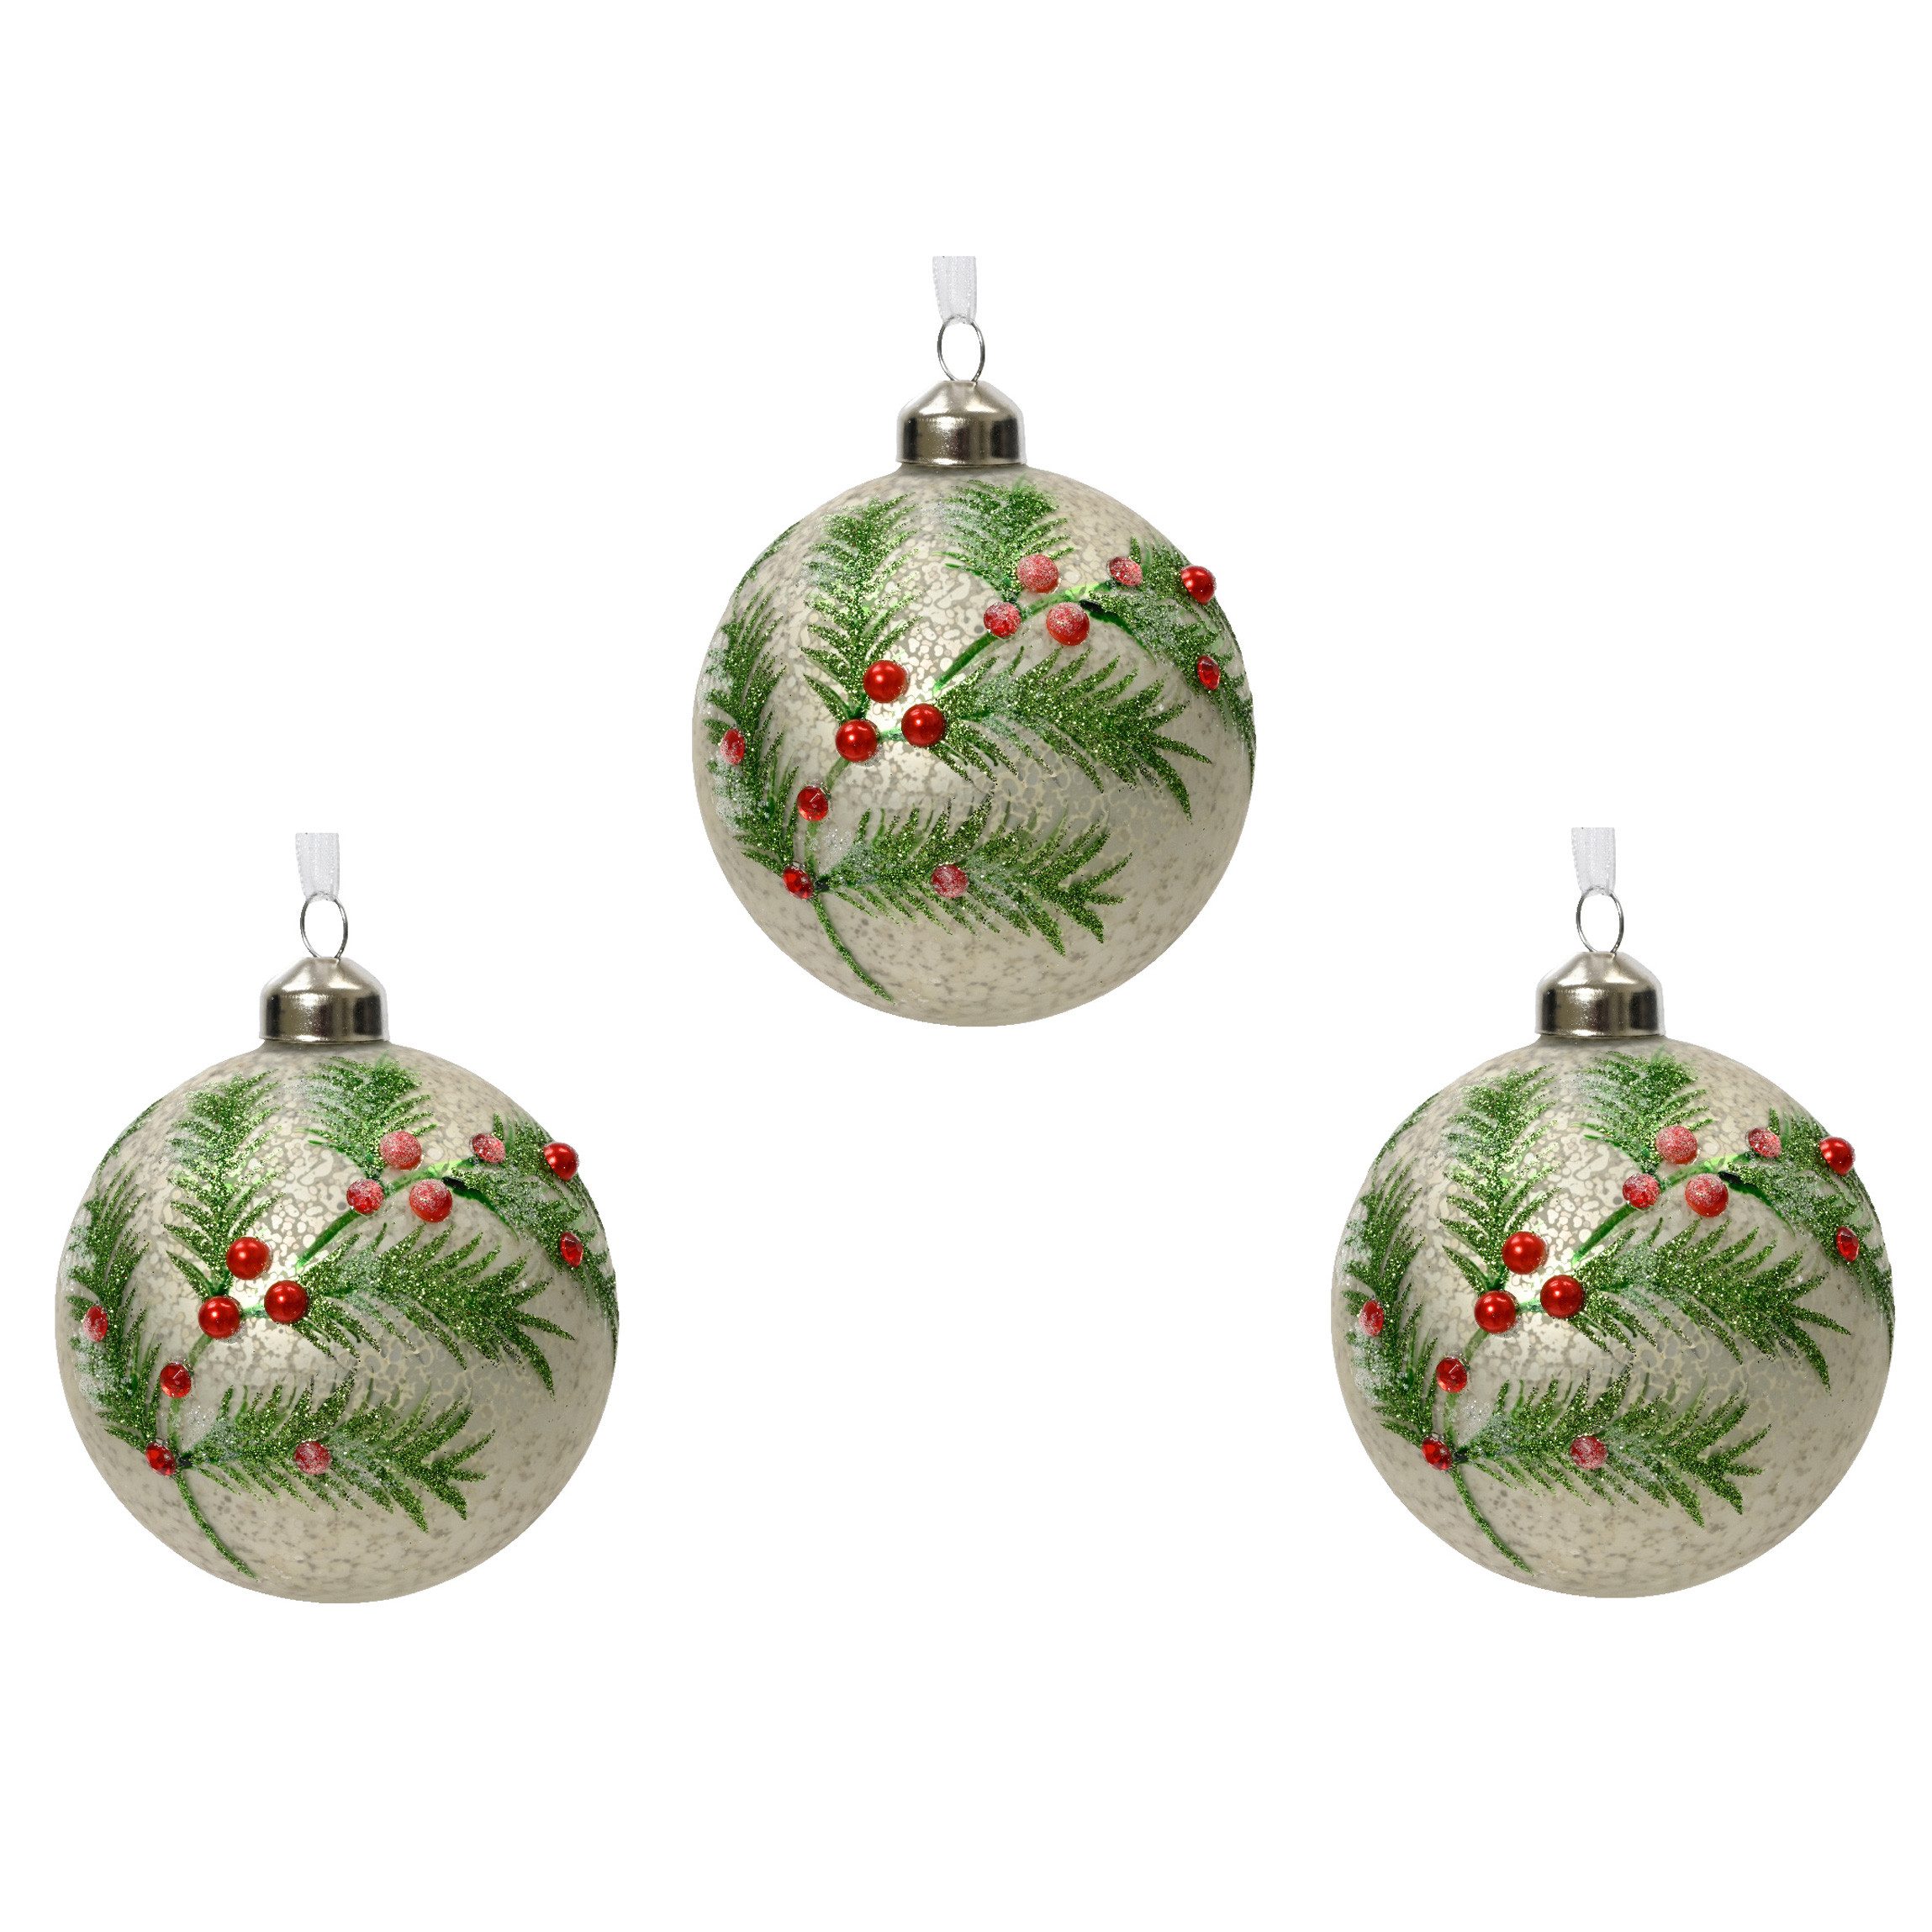 Decoris season decorations Weihnachtsbaumkugel, Weihnachtskugeln Glas 8cm mit Motiv zweig und Beeren - Silber / Matt